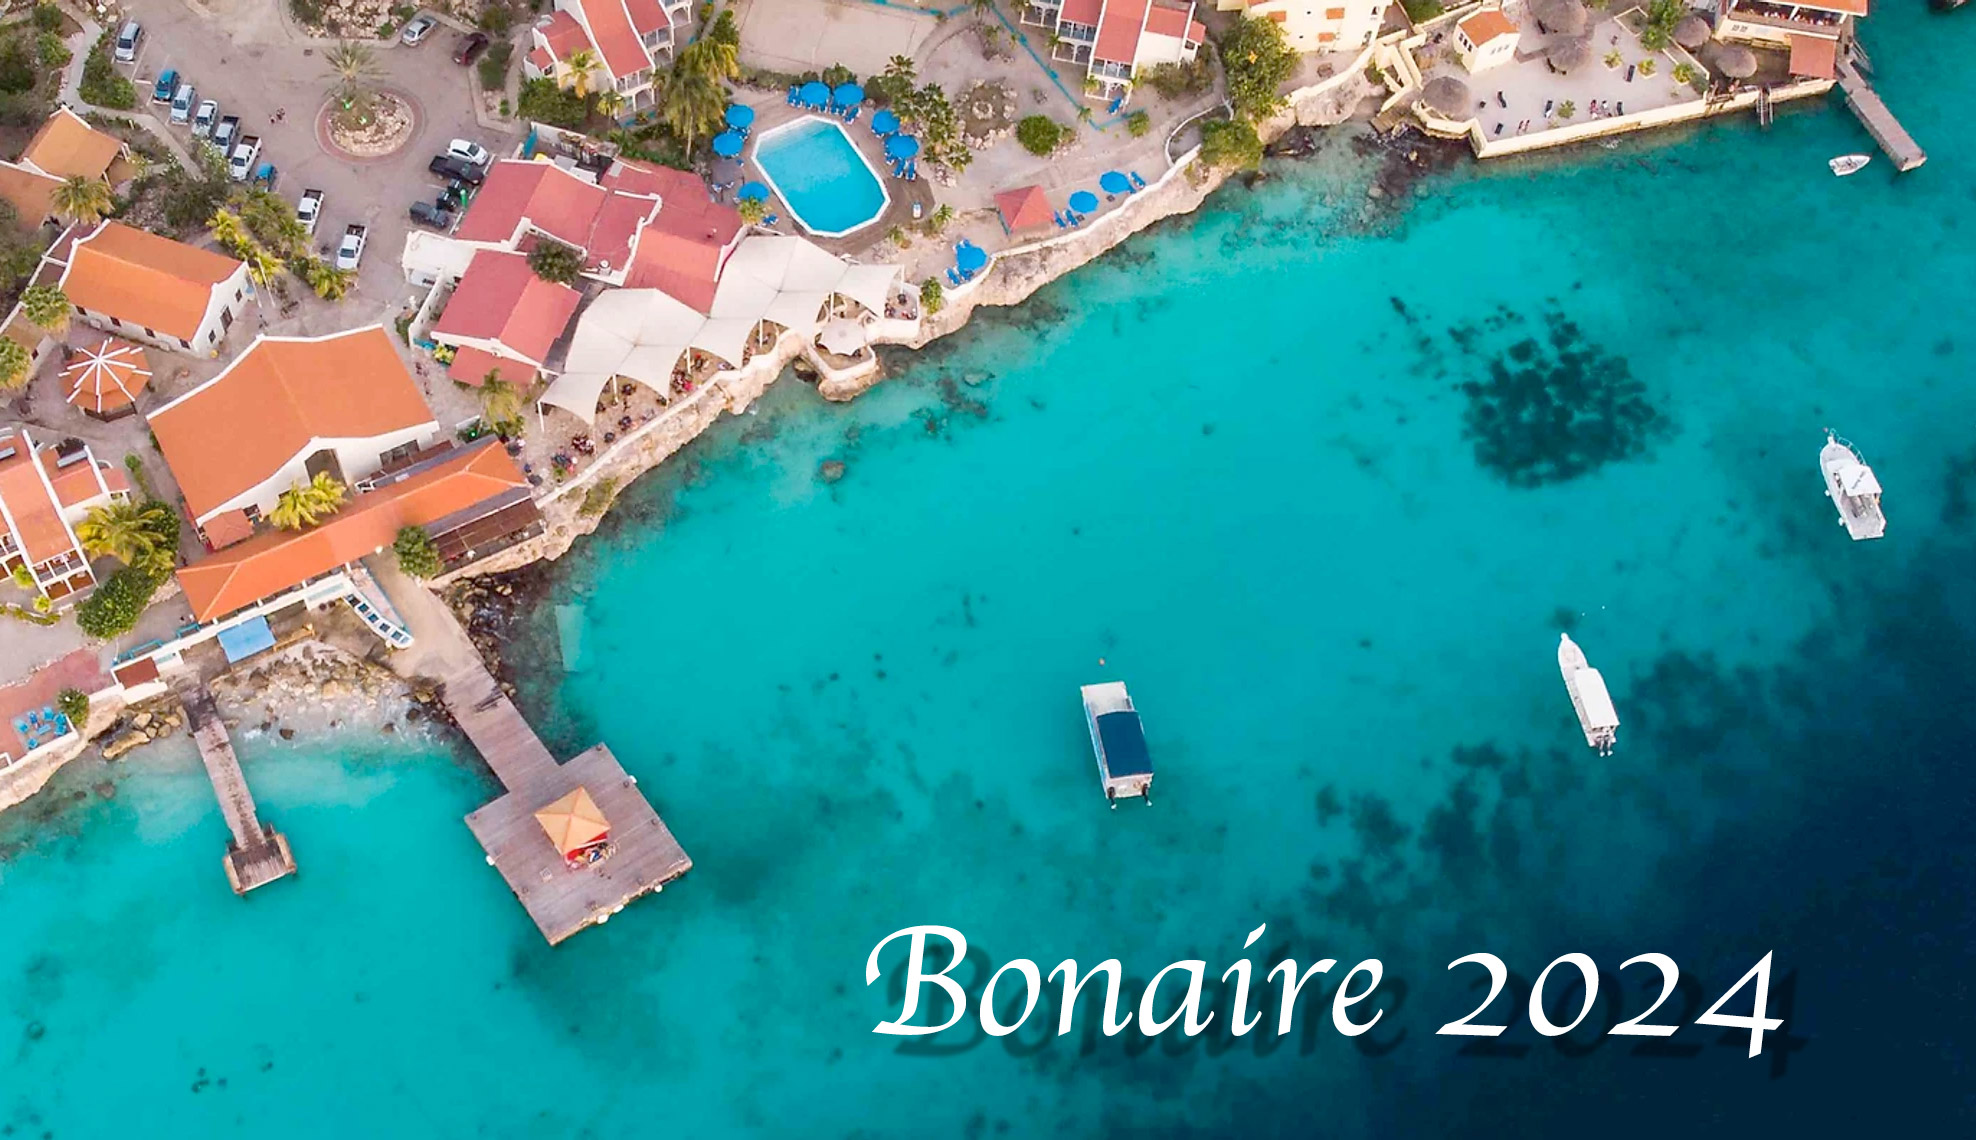 Bonaire 2024